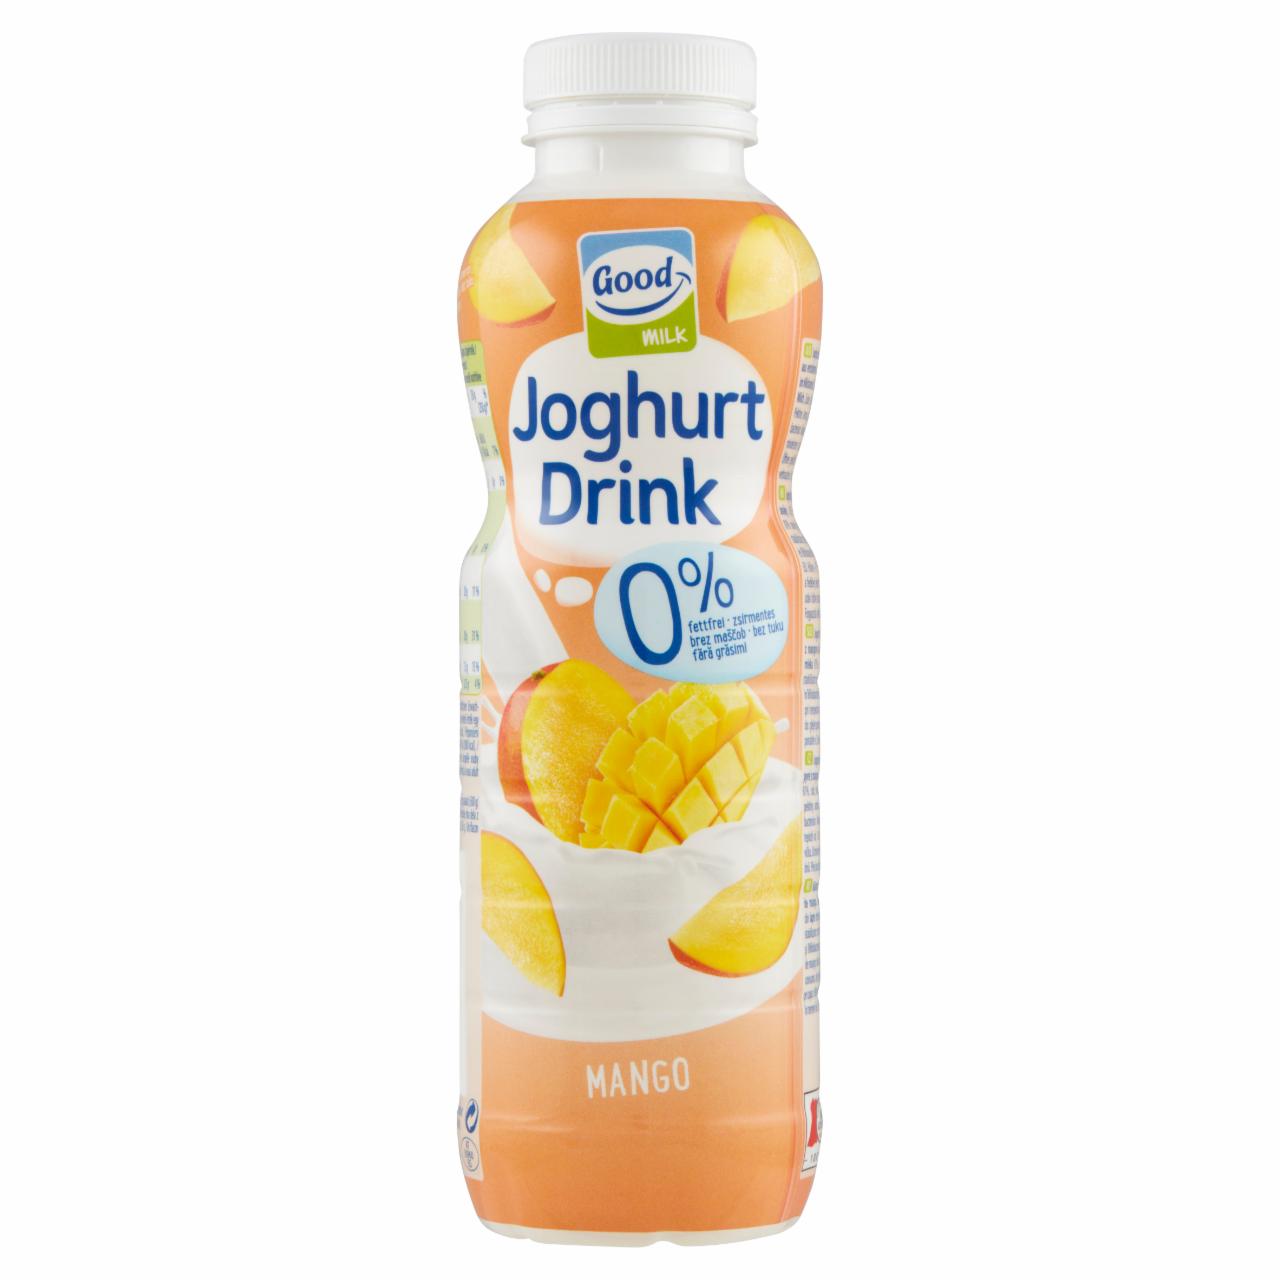 Képek - Good Milk sovány mangó joghurtital 500 g